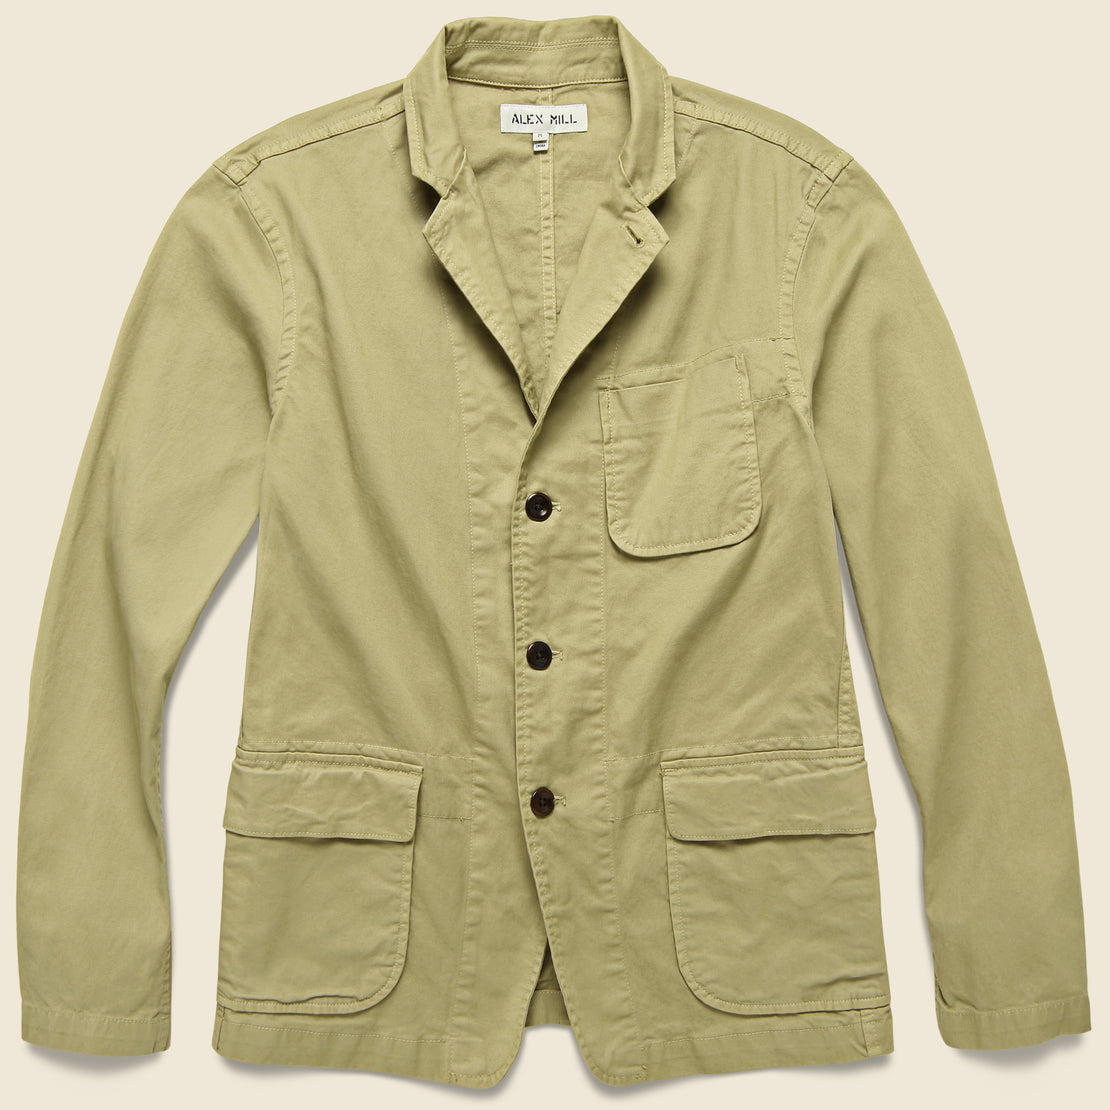 Alex Mill Twill Sack Jacket - Vintage Khaki